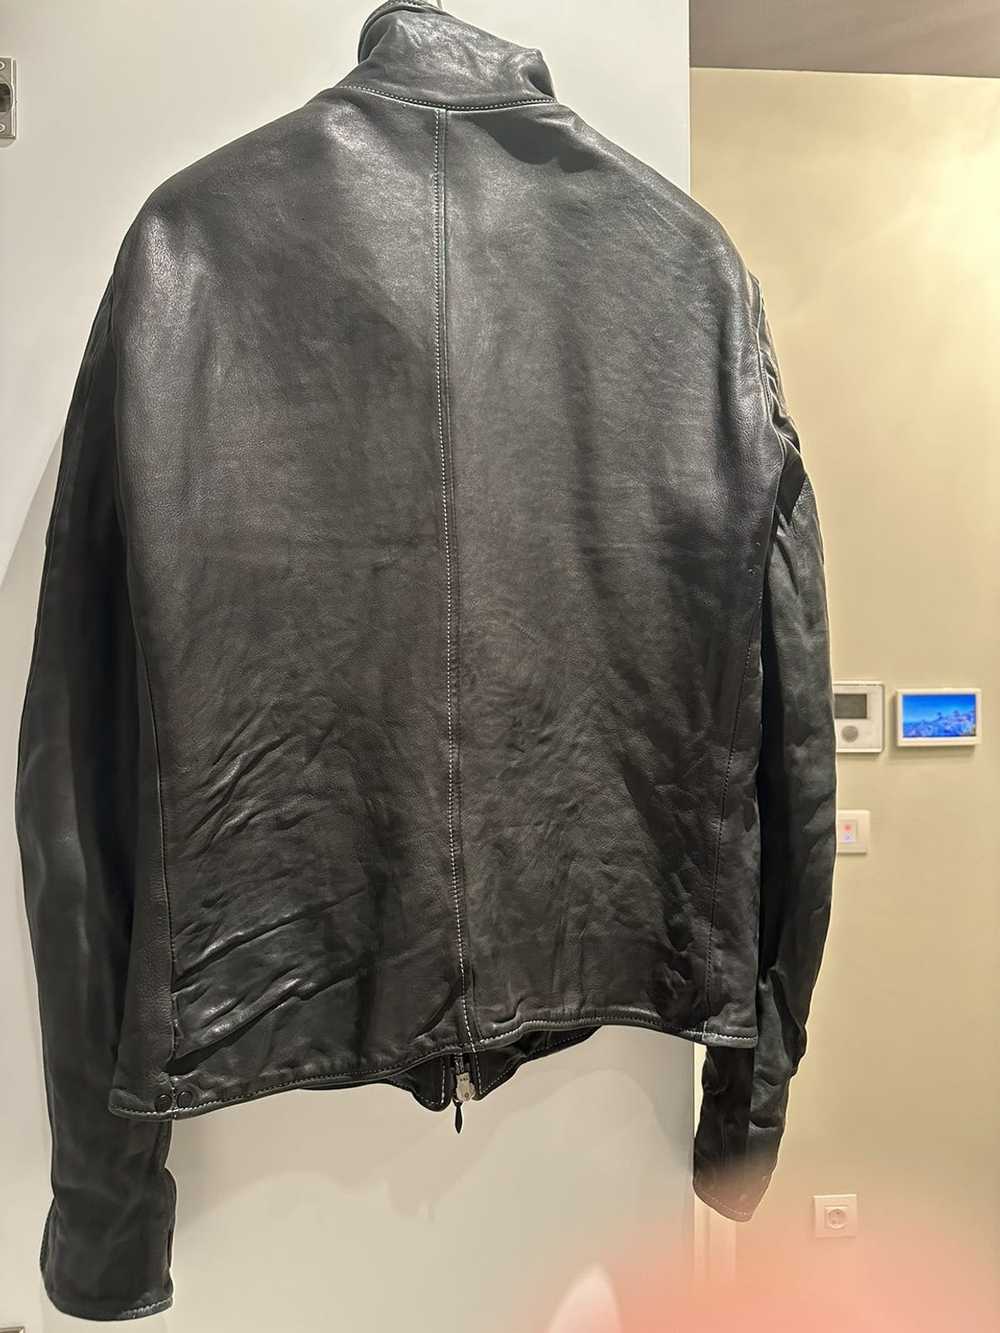 Incarnation Incarnation leather jacket - image 5